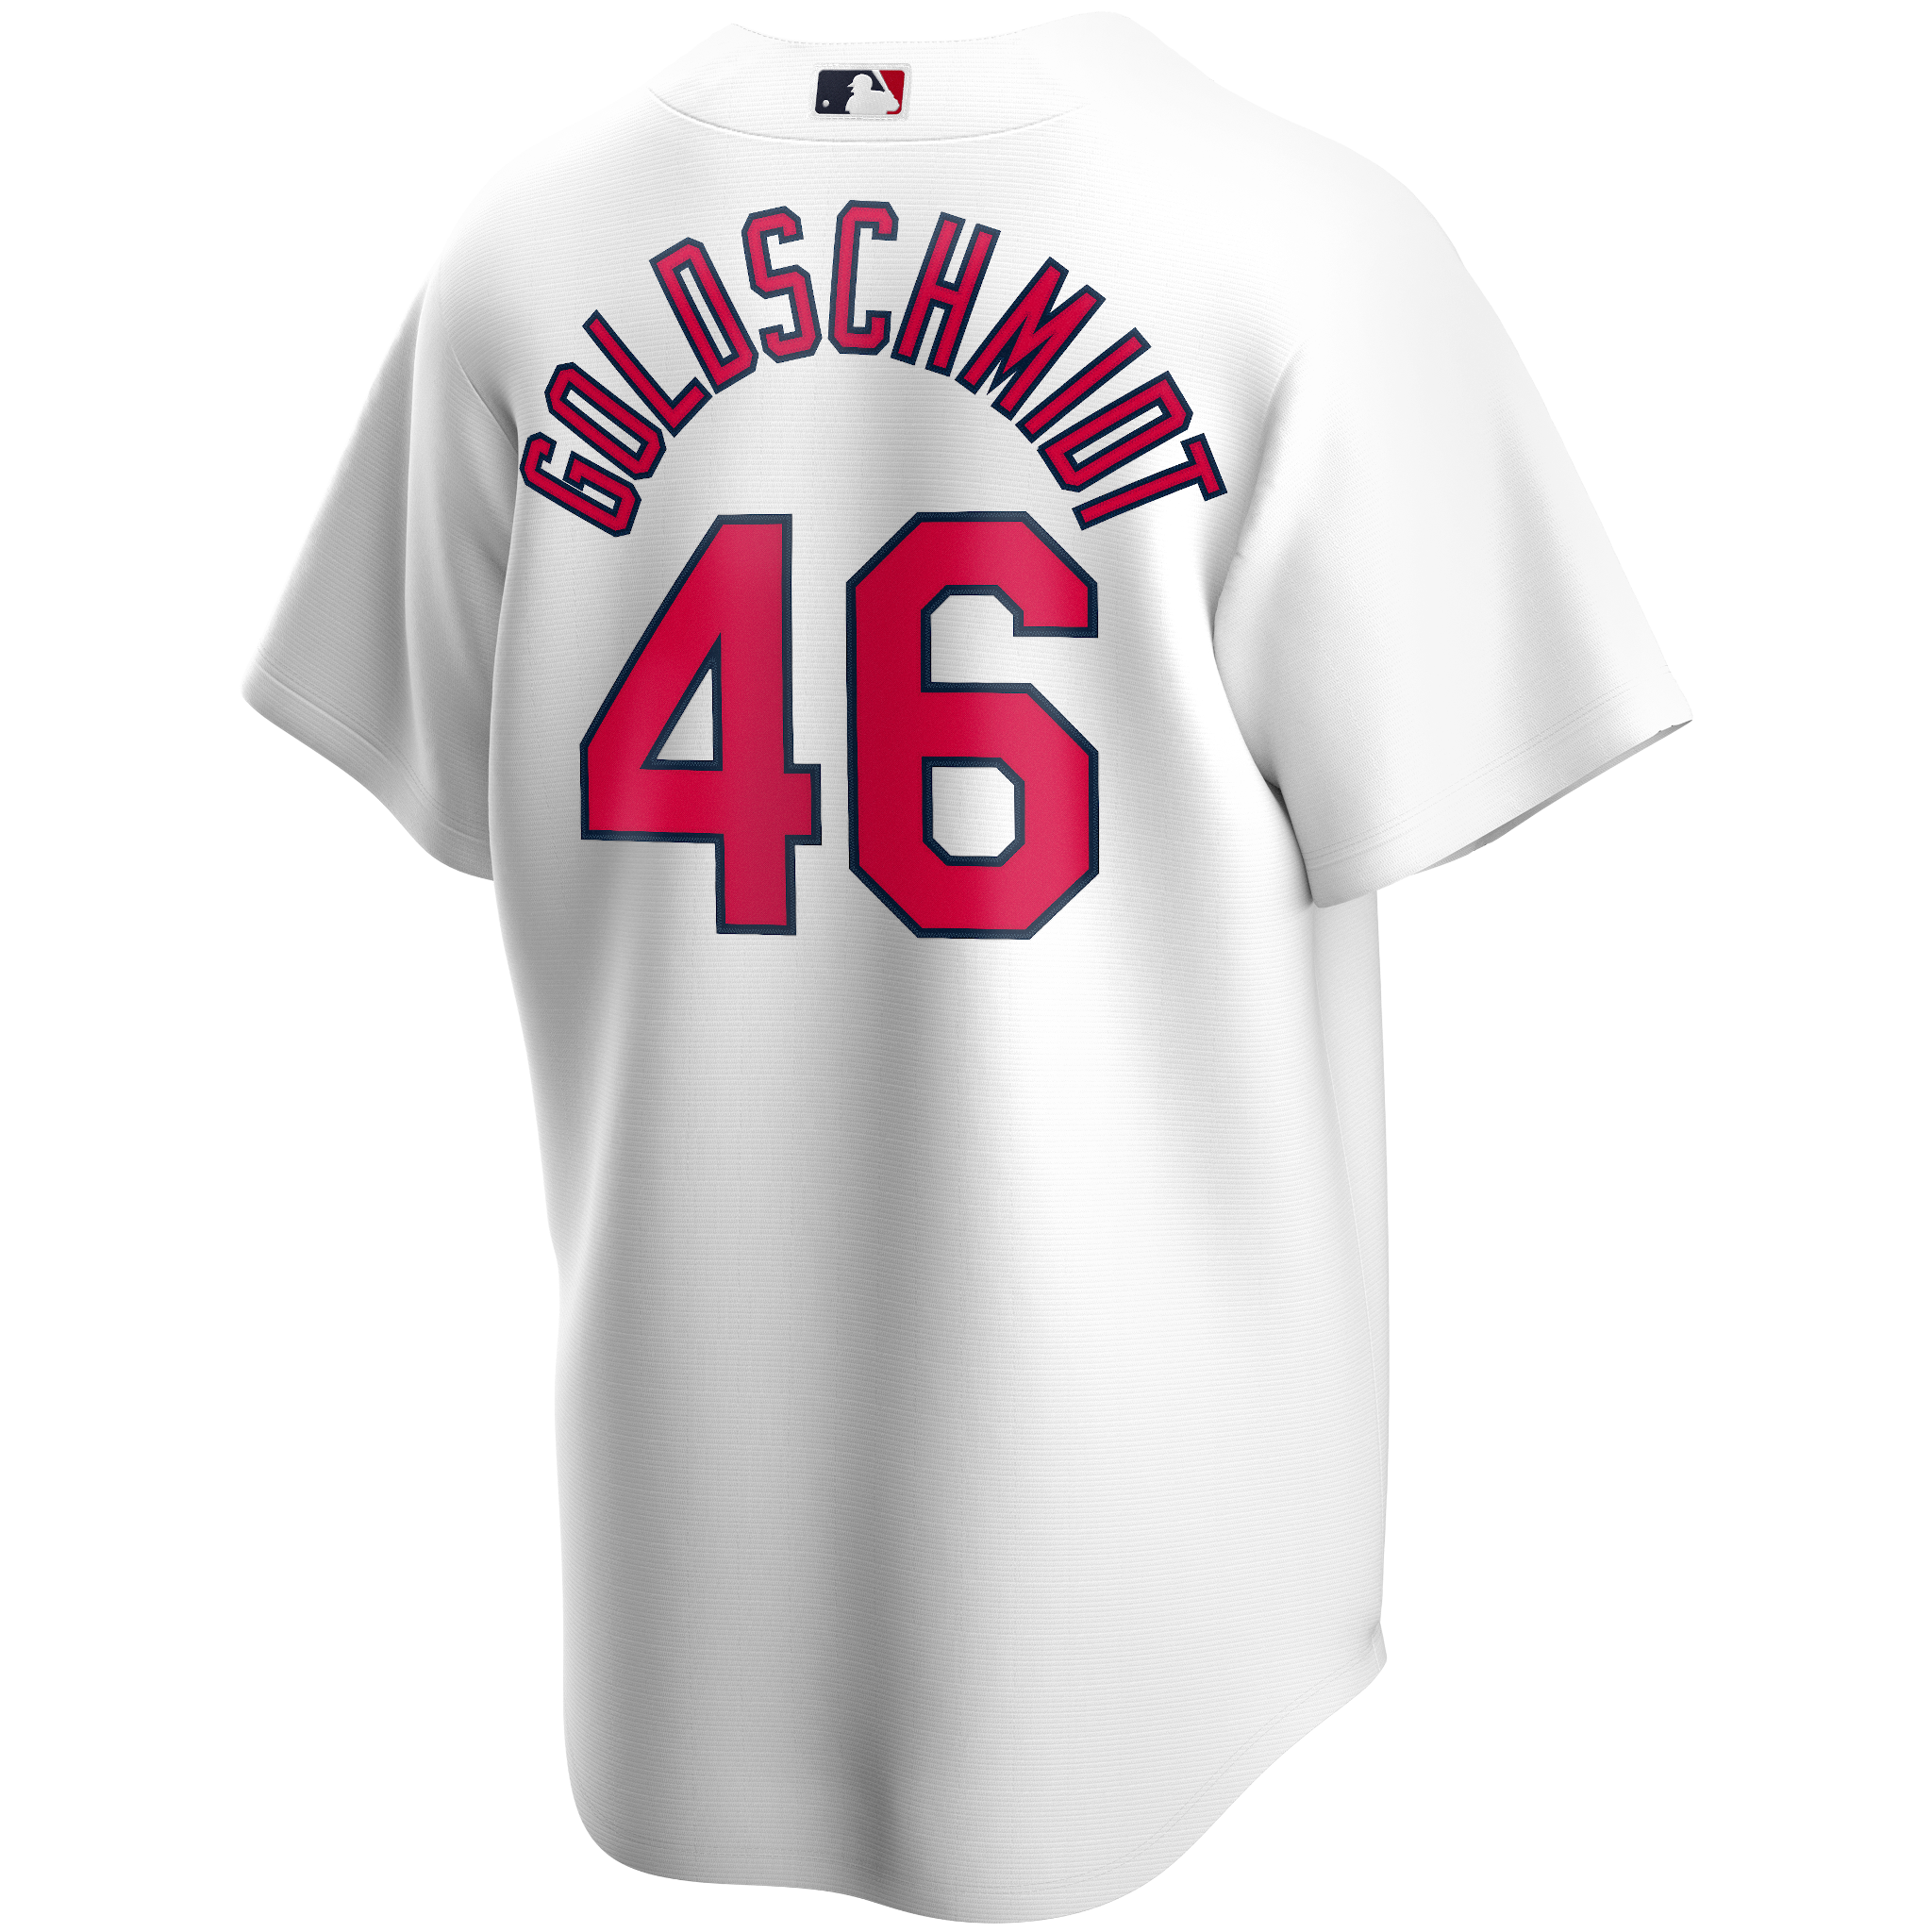 Official Paul Goldschmidt Jersey, Paul Goldschmidt NL MVP Shirts, Baseball  Apparel, Paul Goldschmidt Gear